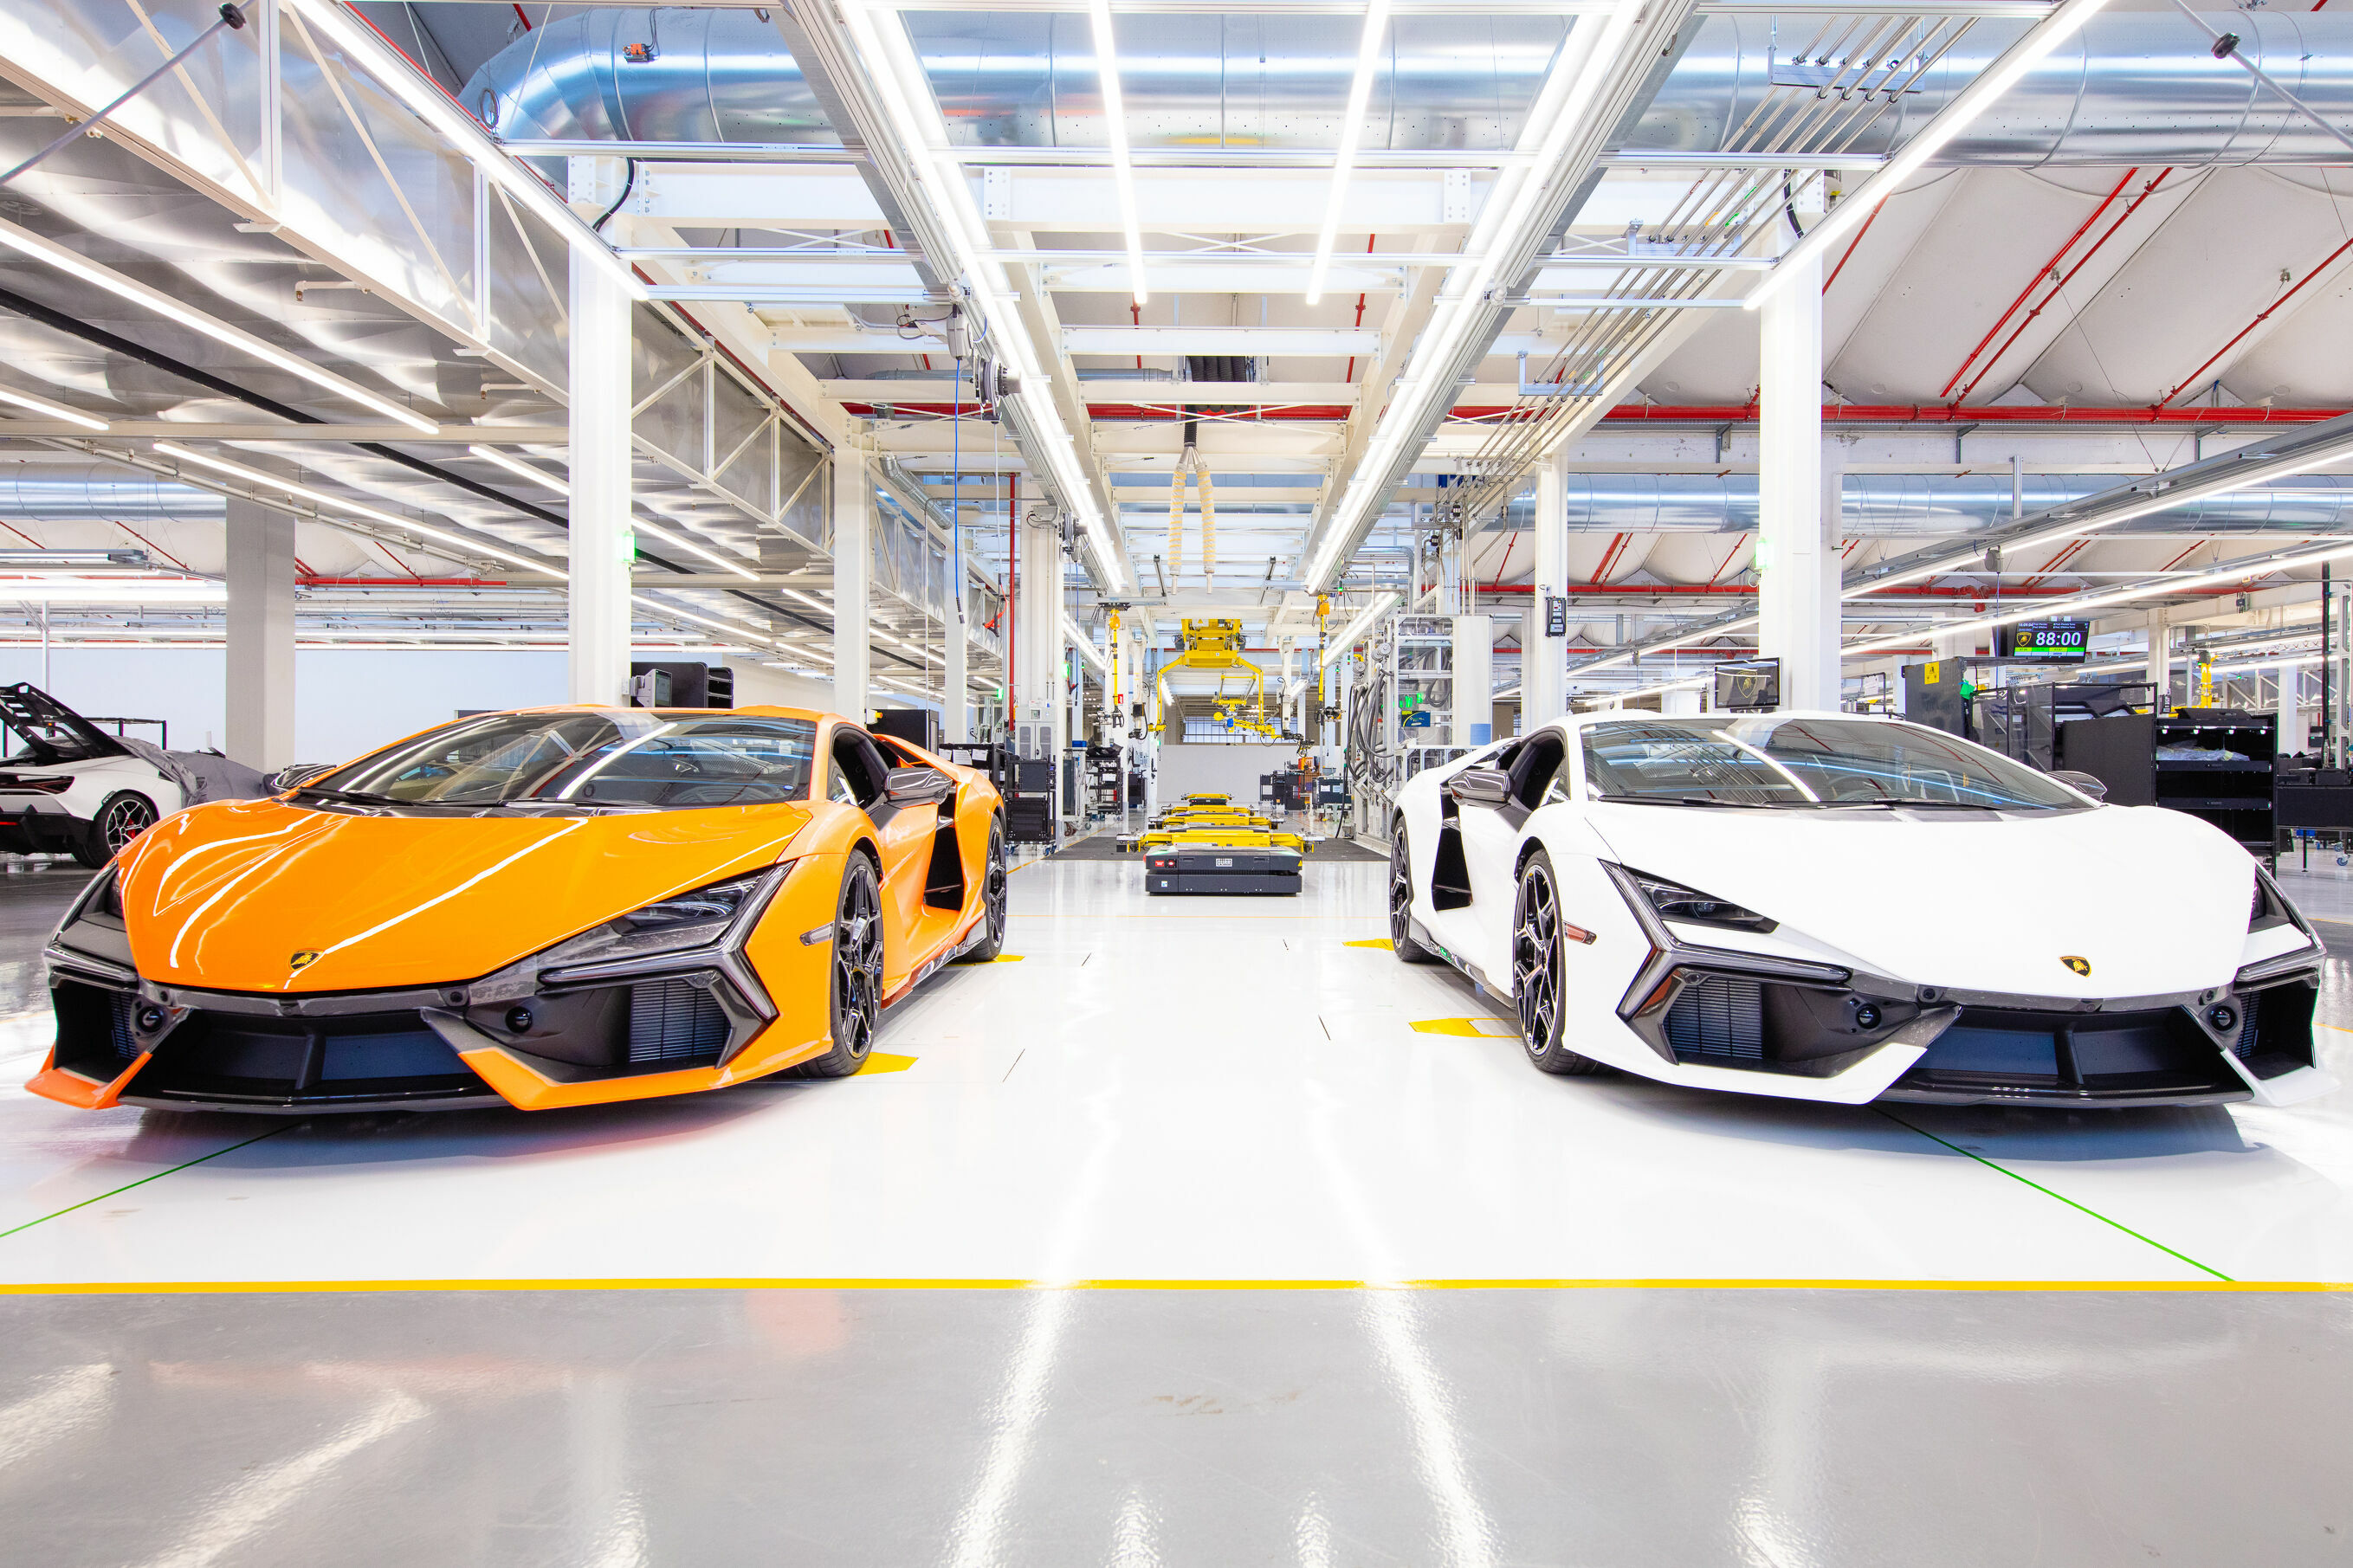 Automobili Lamborghini beschließt das Jahr 2023 mit beispiellosen Rekorden